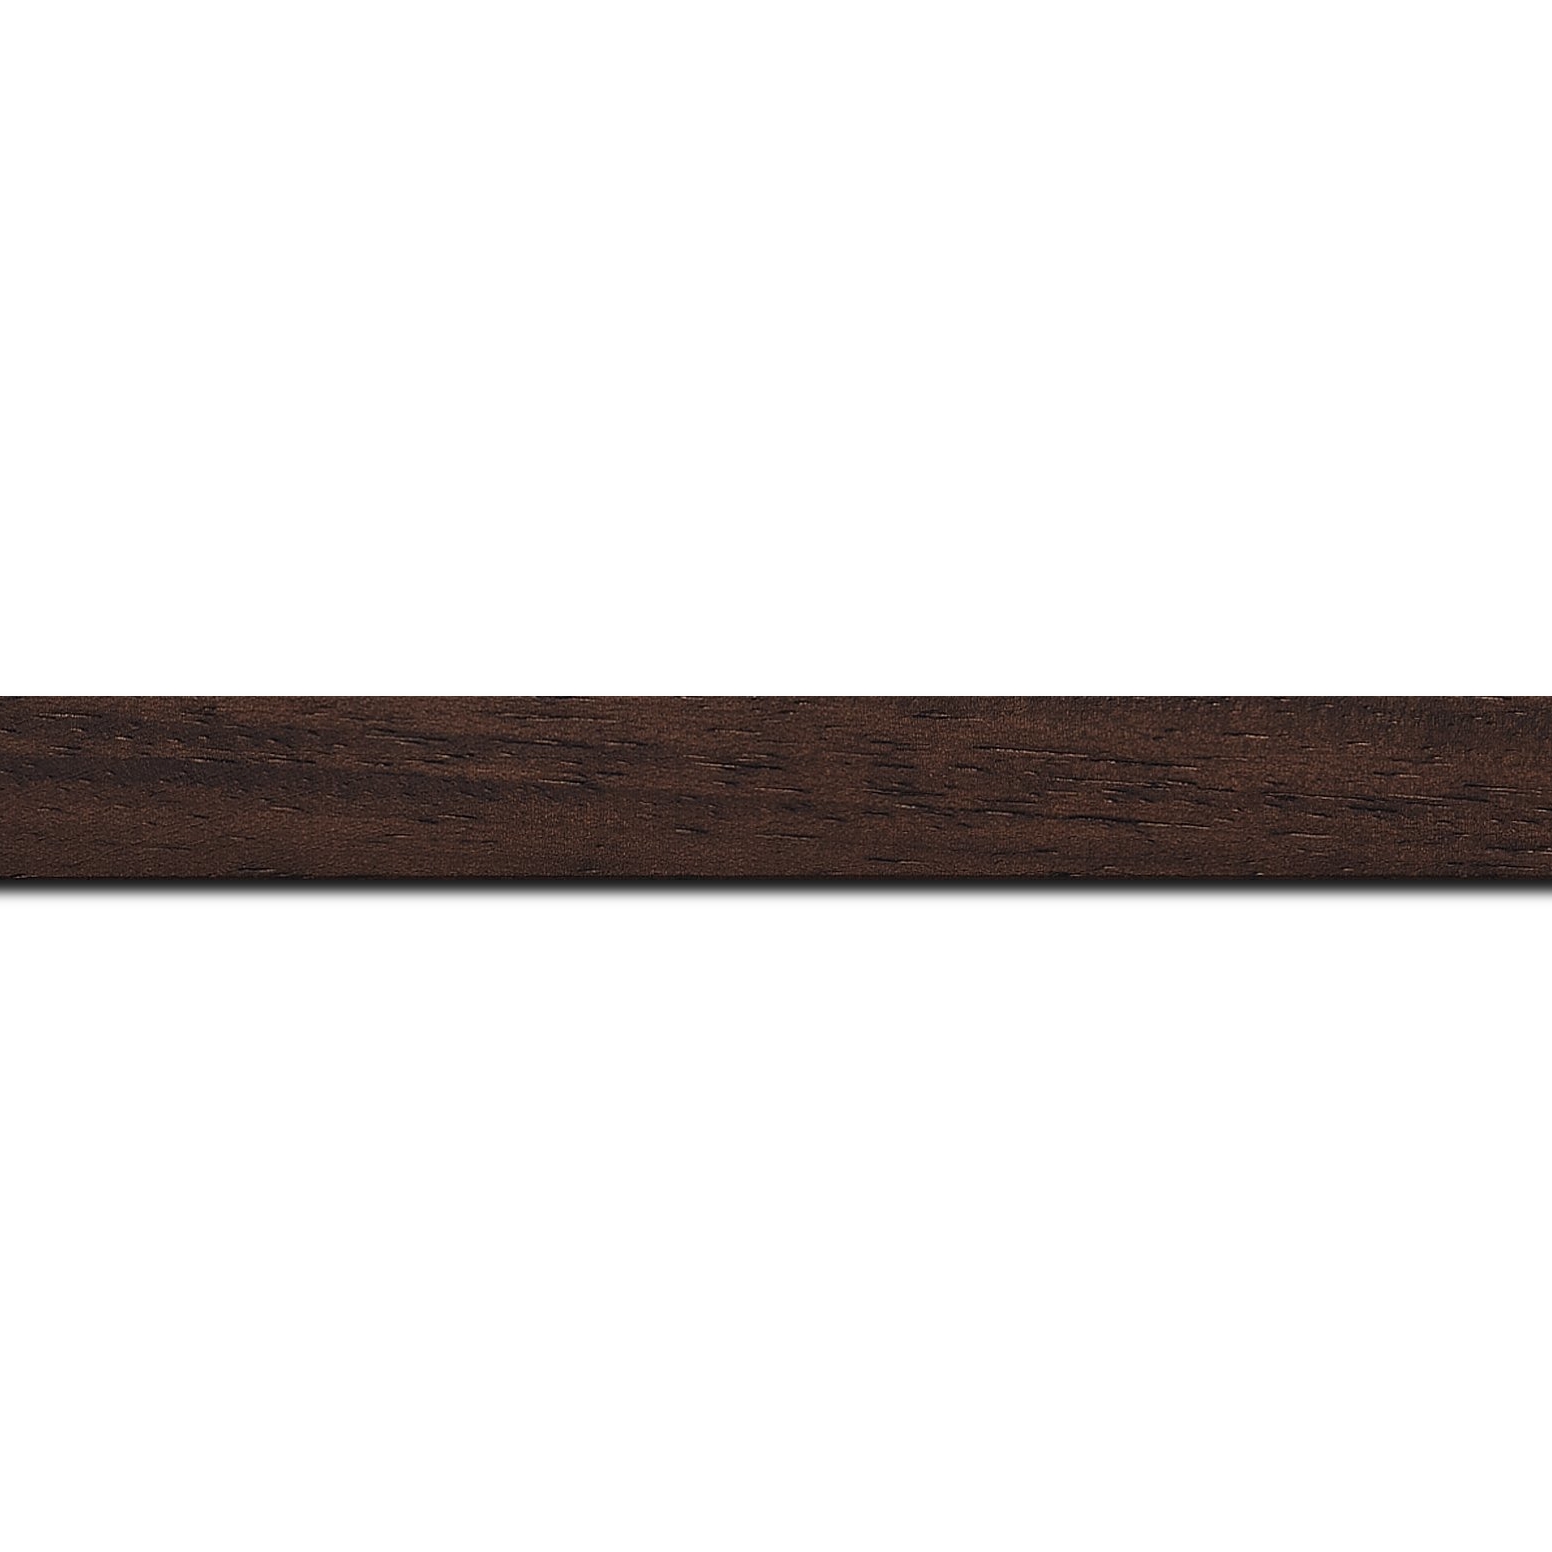 Pack par 12m, bois profil plat largeur 2cm couleur marron foncé satiné(longueur baguette pouvant varier entre 2.40m et 3m selon arrivage des bois)